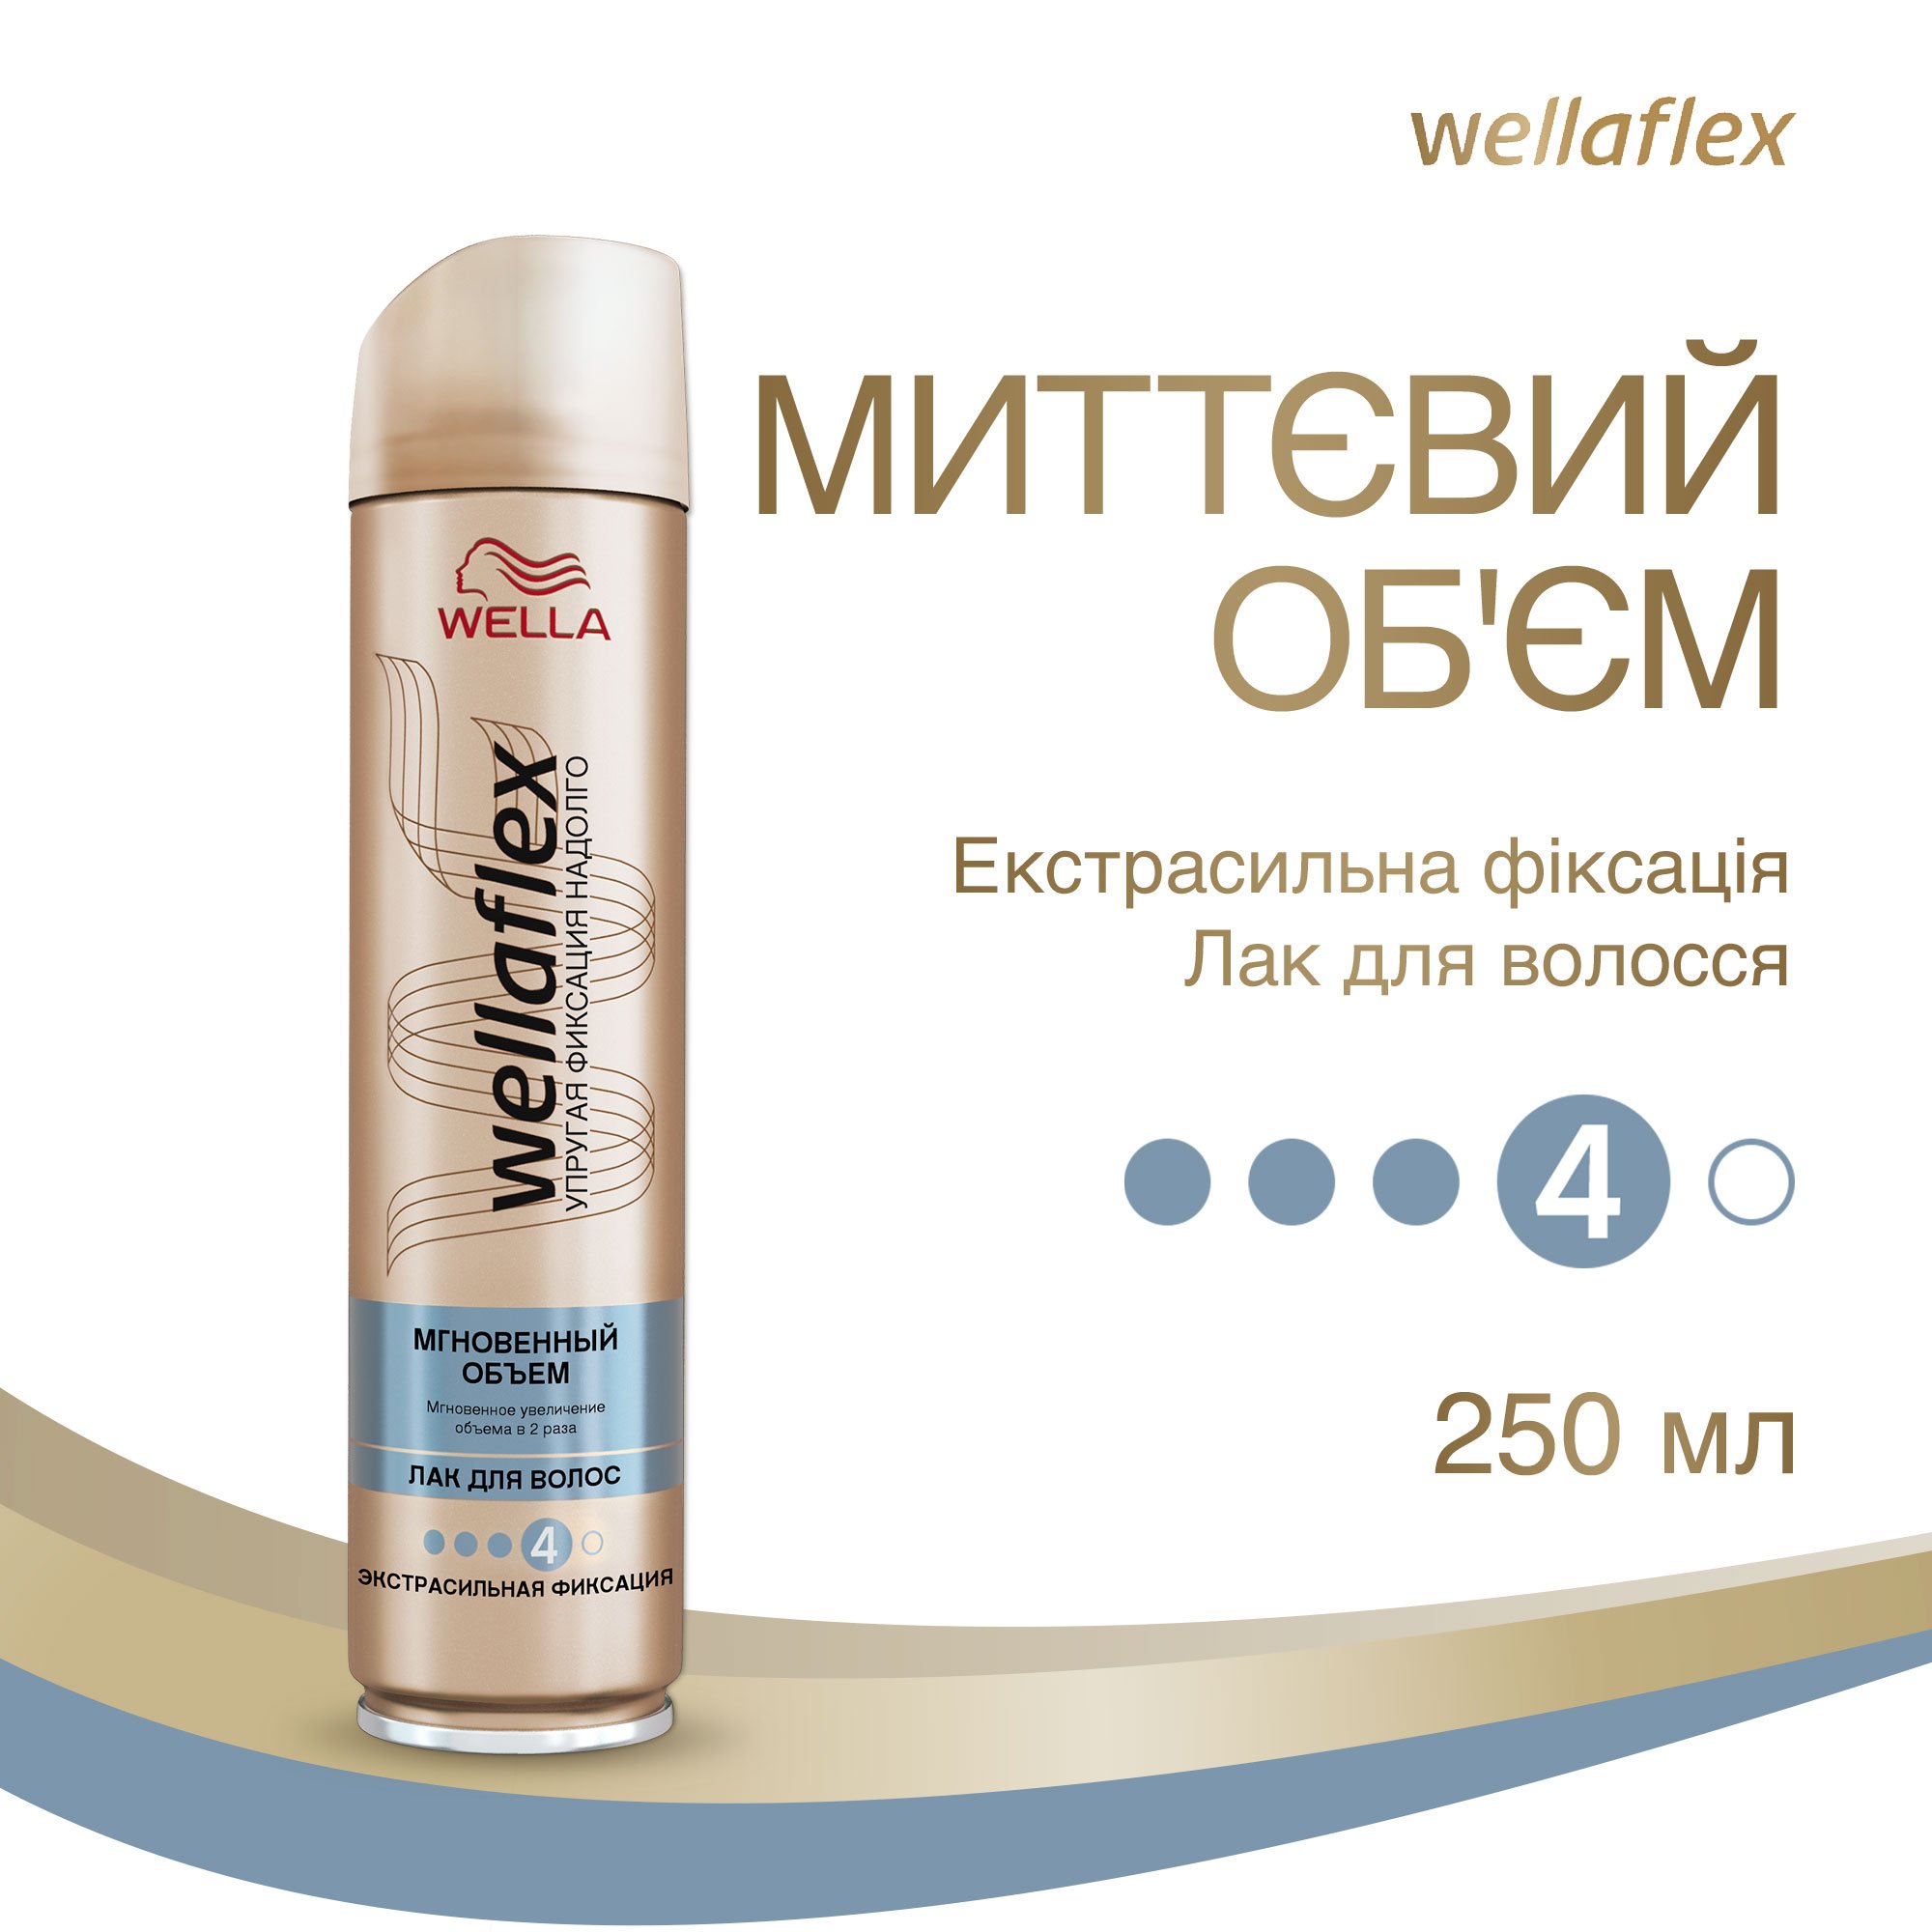 Лак для волос Wellaflex Мгновенный объем Экстрасильной фиксации, 250 мл - фото 2